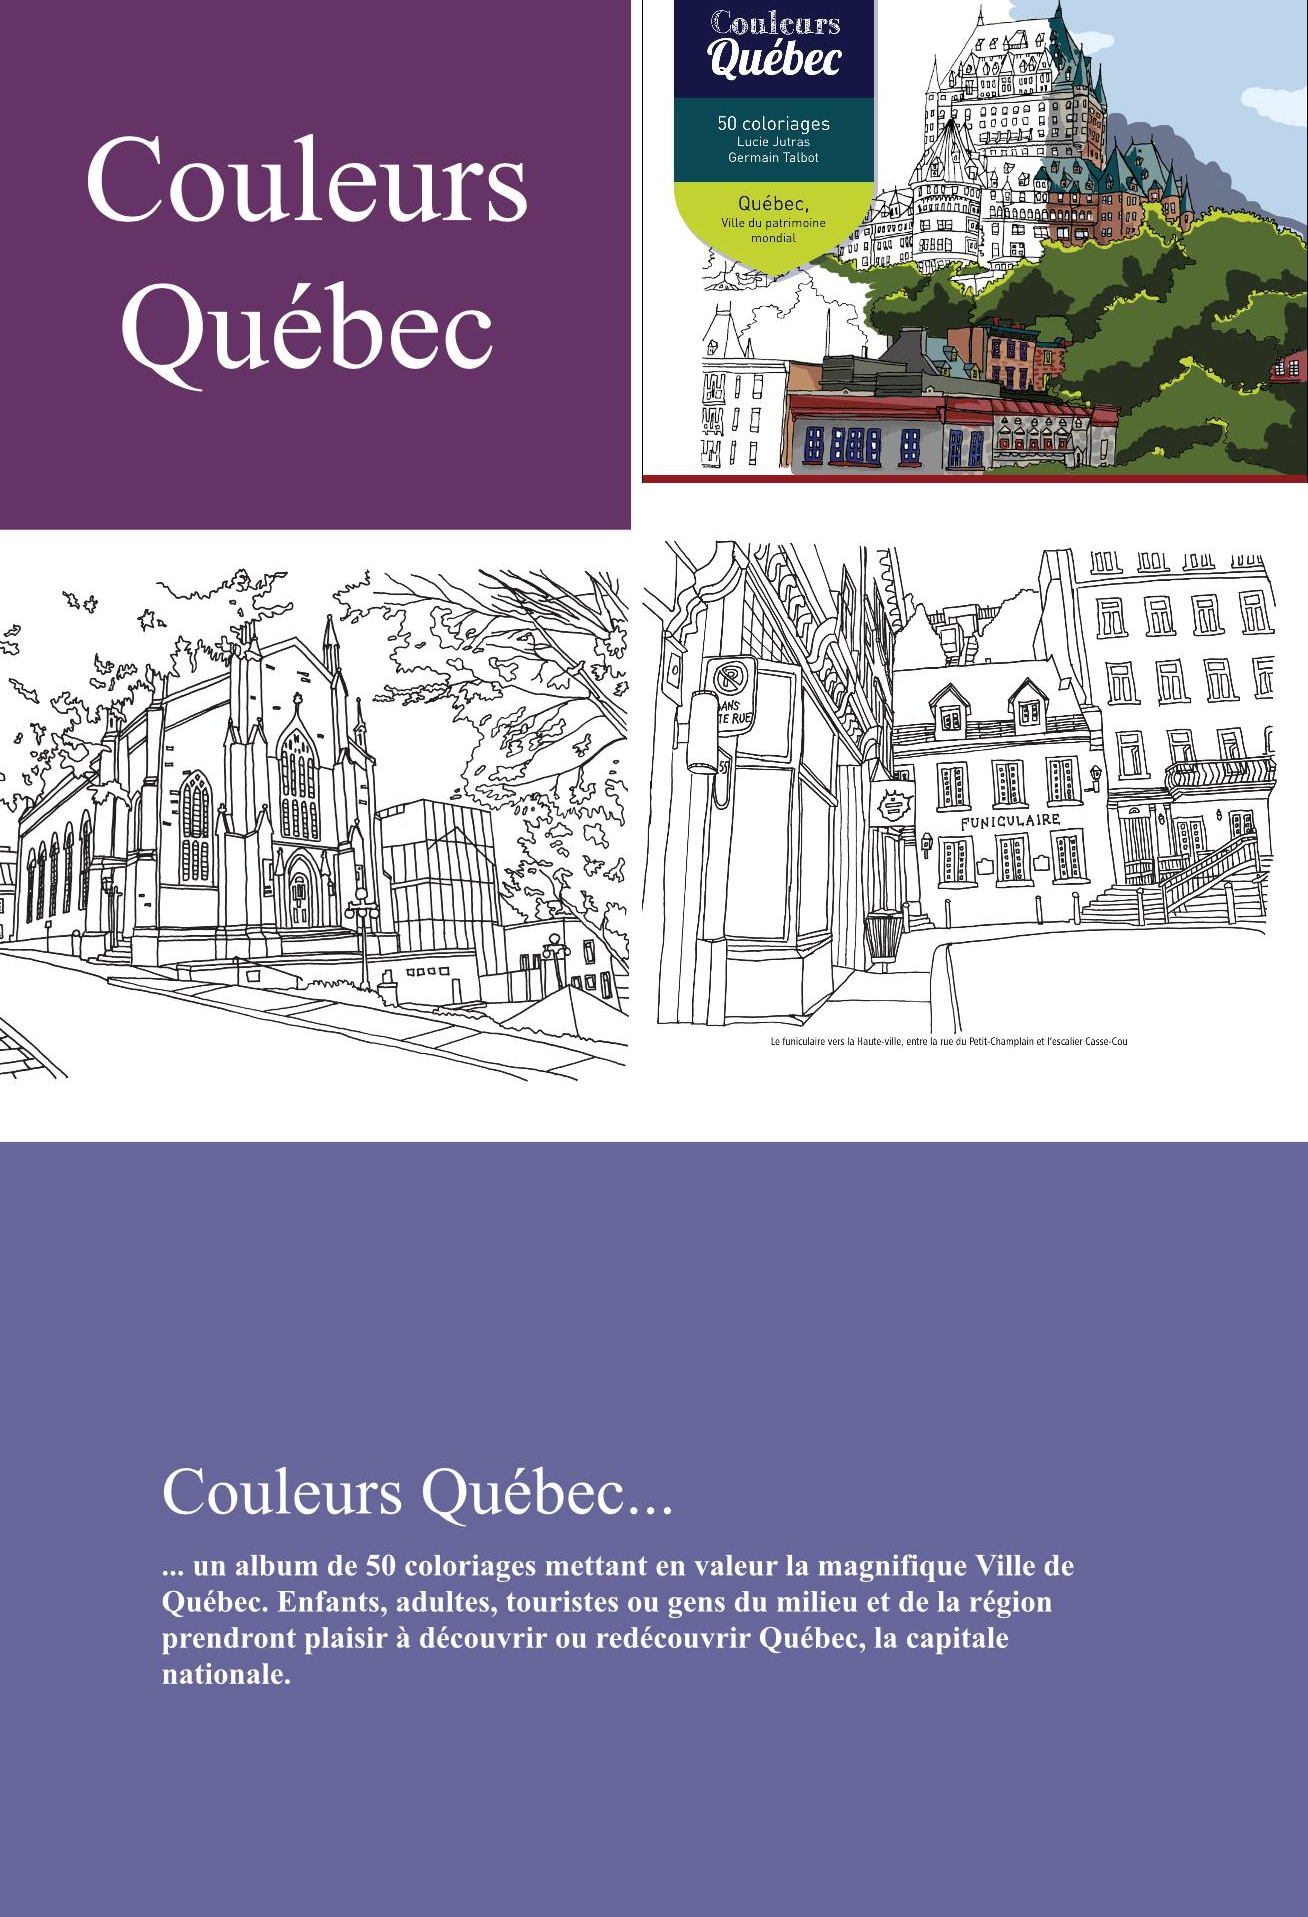 Couleurs Québec, 50 coloriages, Québec, ville du Patrimoine mondial